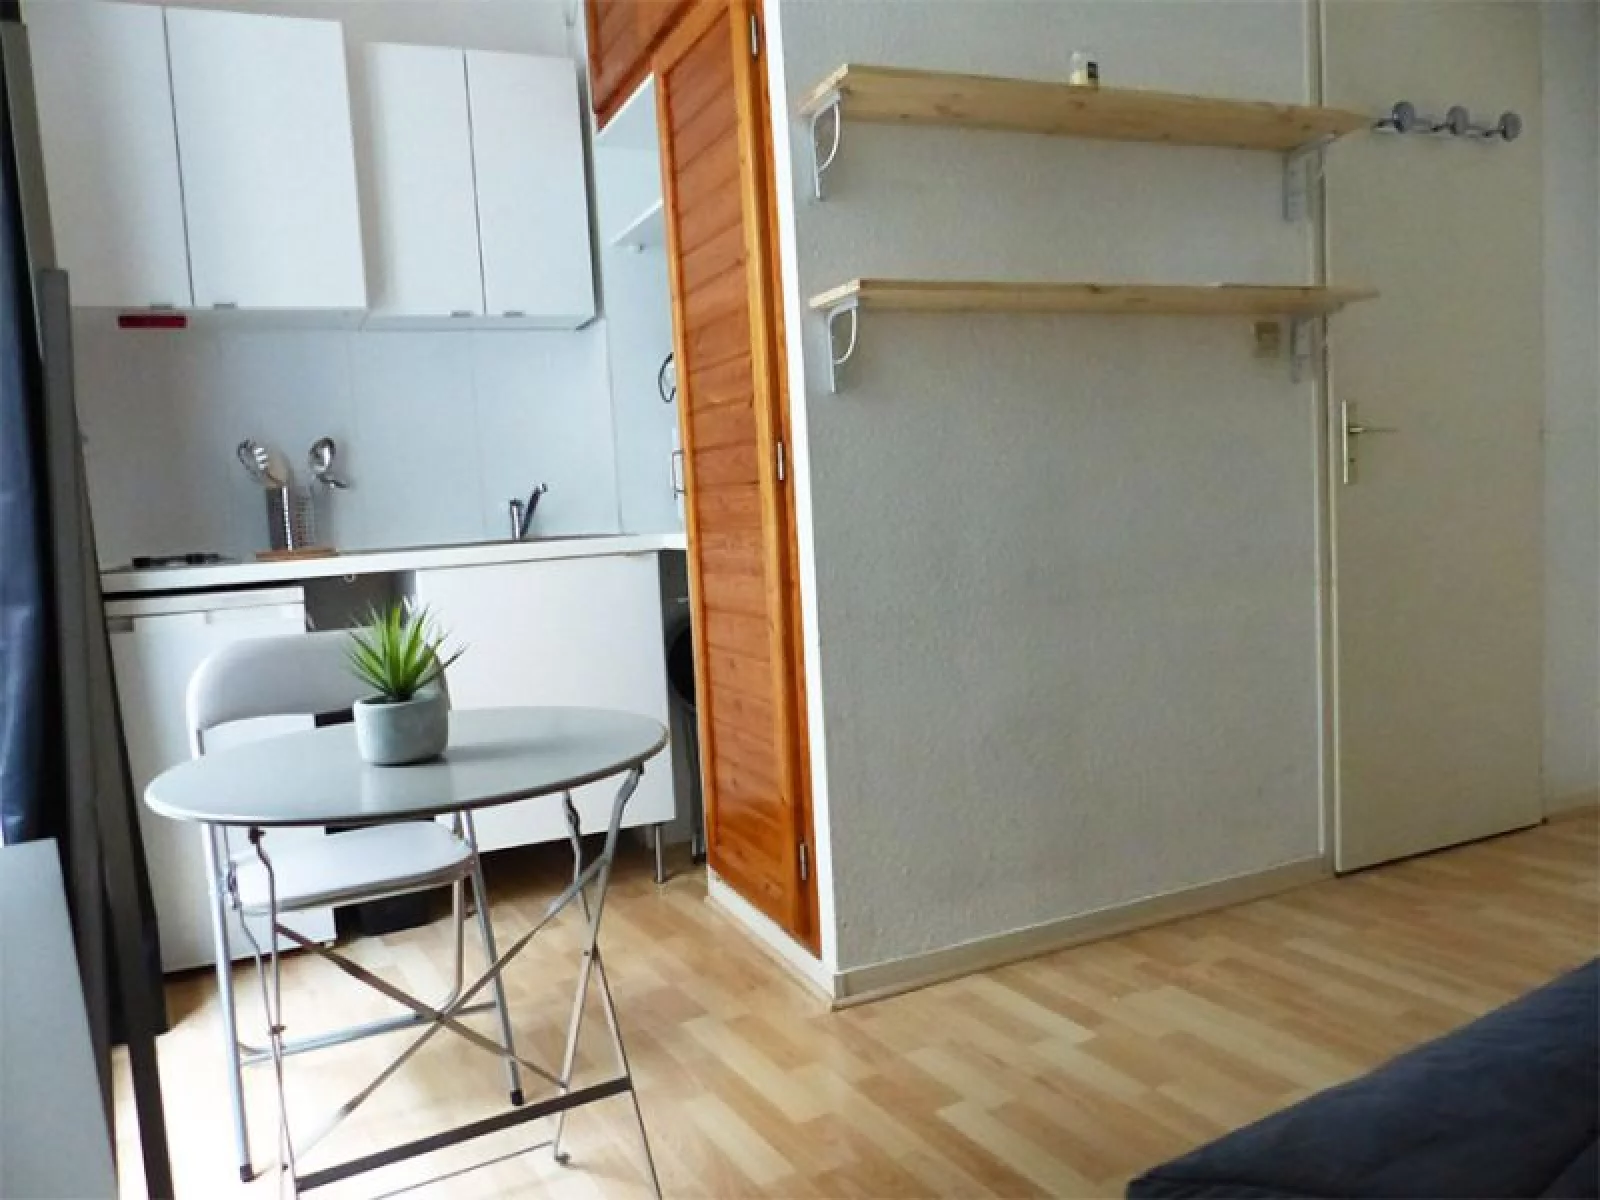 Vente studio meublé 15m² (Bordeaux - Porte de Bourgogne)